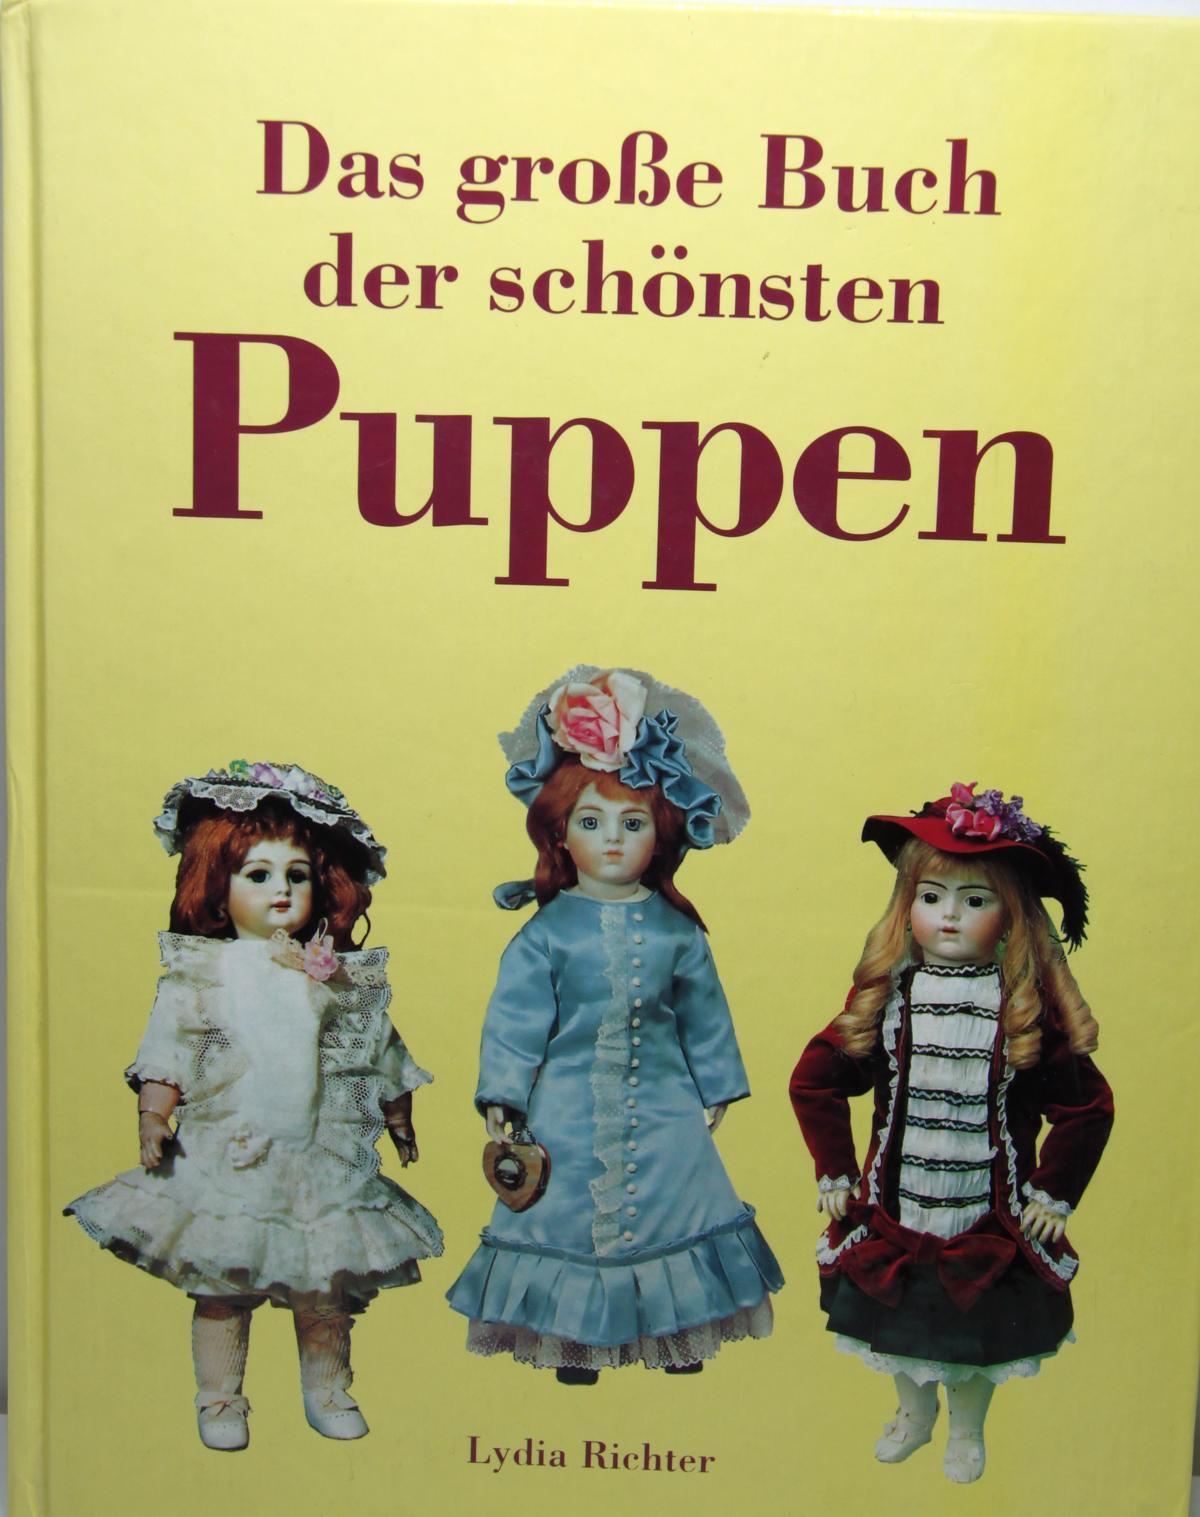 Buch "Das gro0e Buch der schönsten Puppen" Lydia Richter